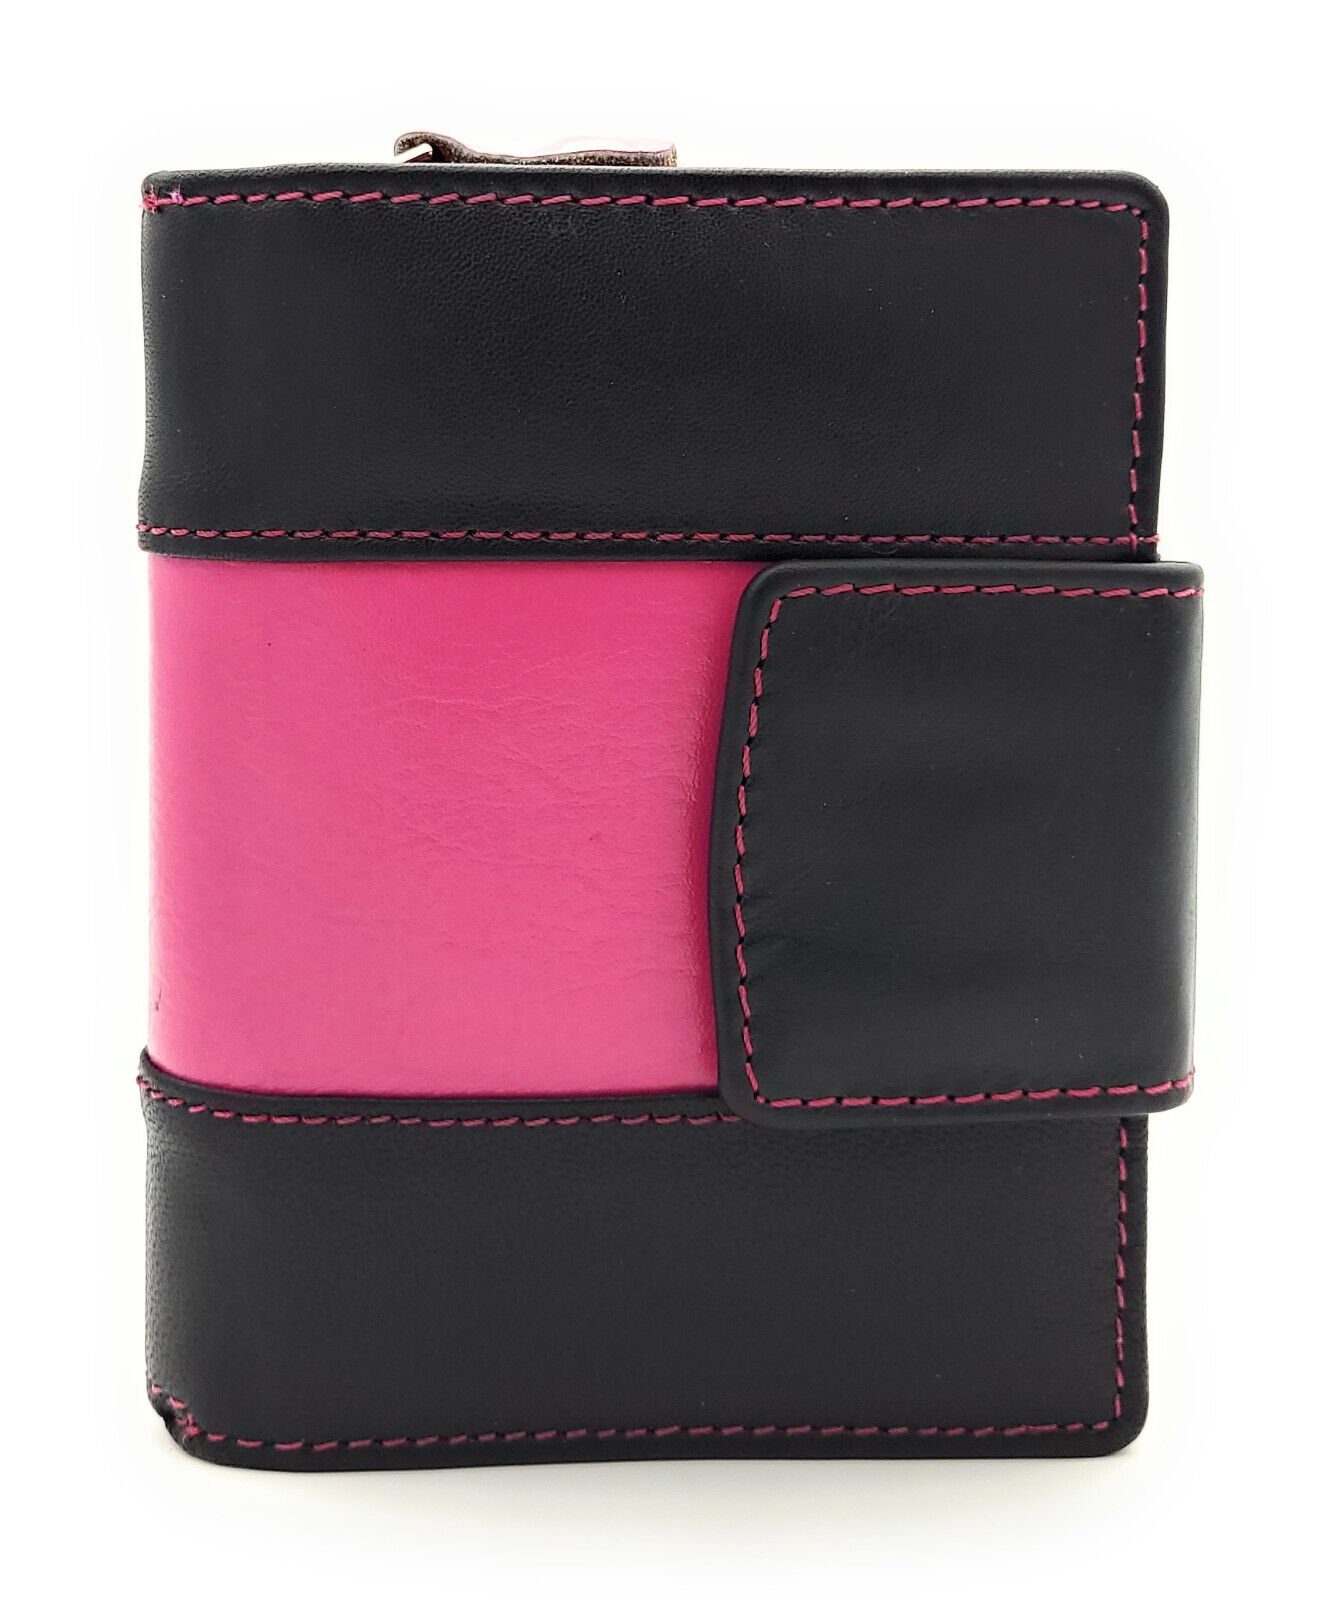 Lemasi Geldbörse echt Leder Damen Portemonnaie mit Außenriegel, Nappaleder, viel Platz, schwarz pink